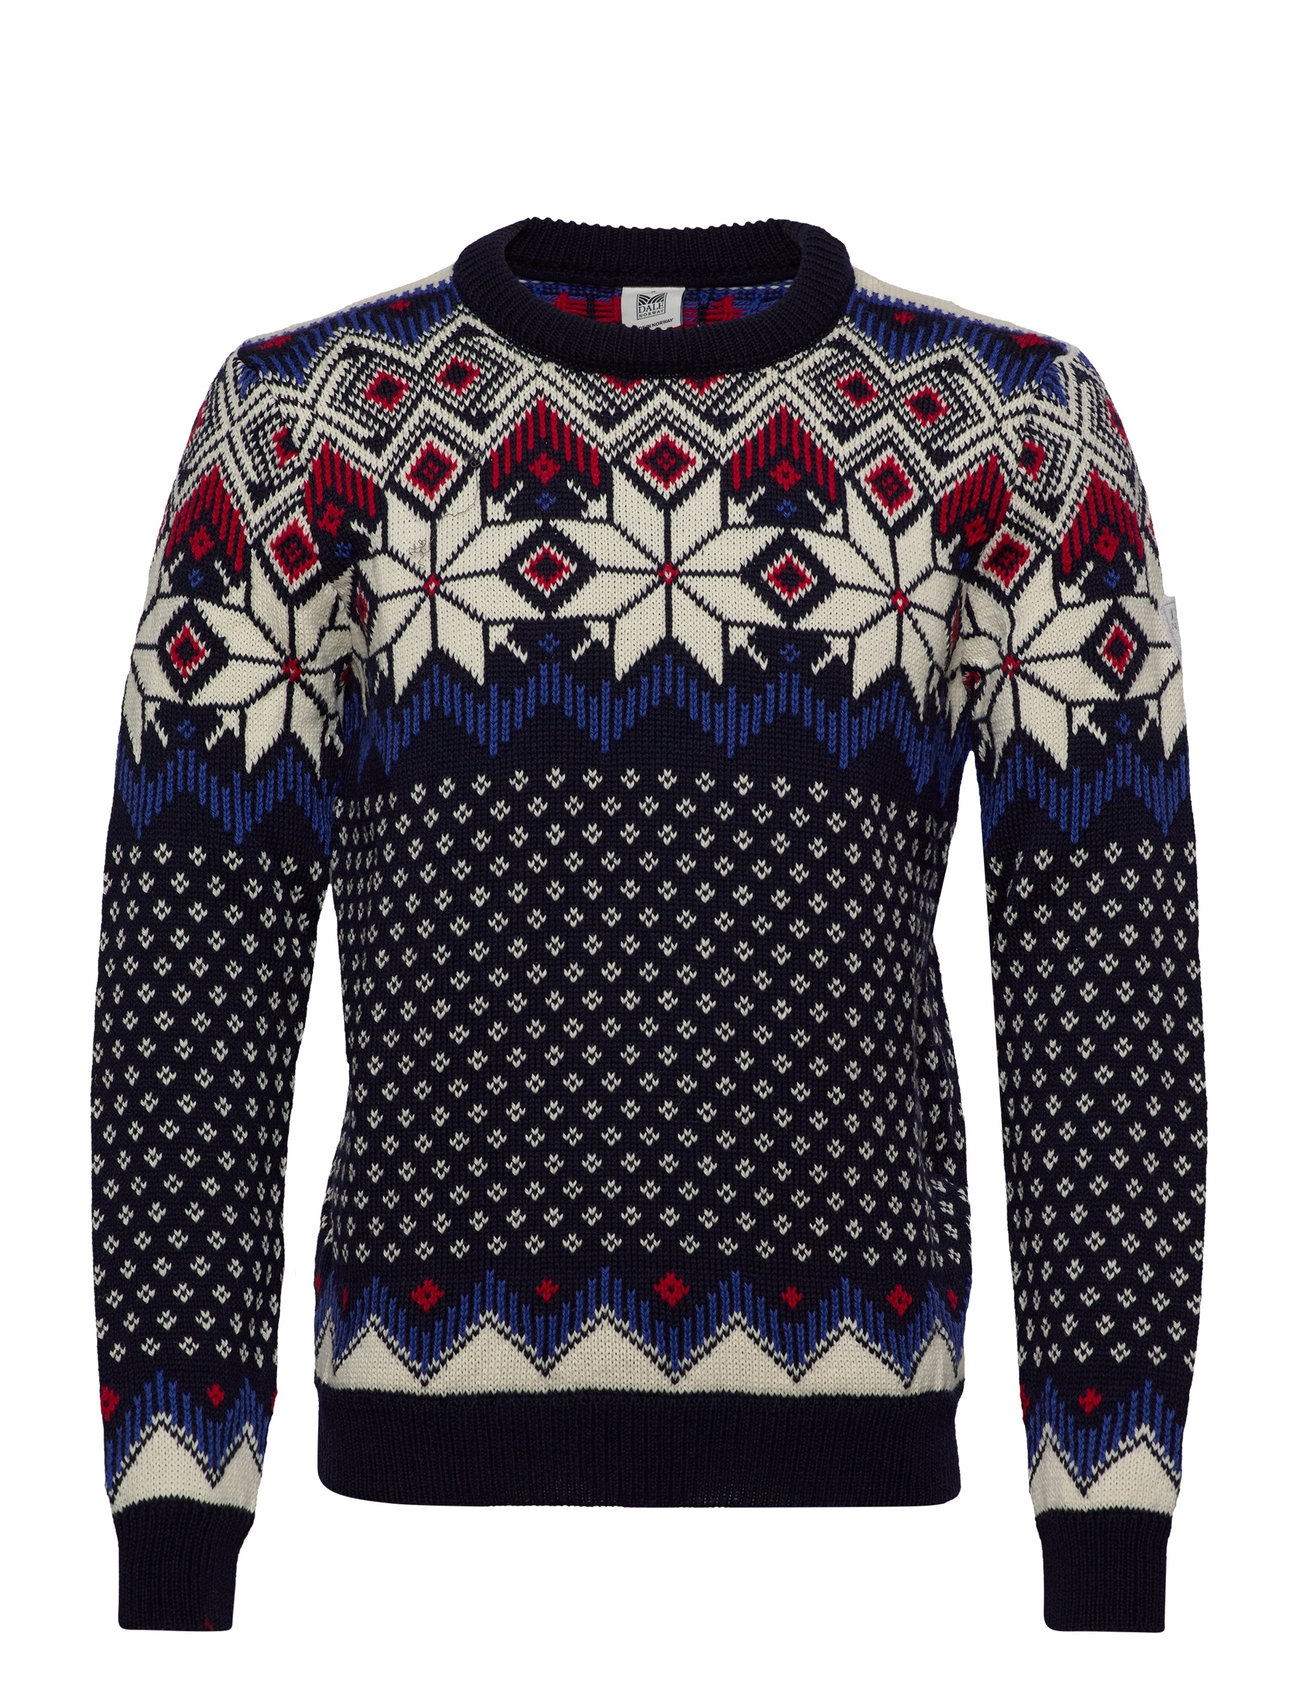 Vegard Masculine Sweater Stickad Tröja M. Rund Krage Multi/mönstrad Dale Of Norway